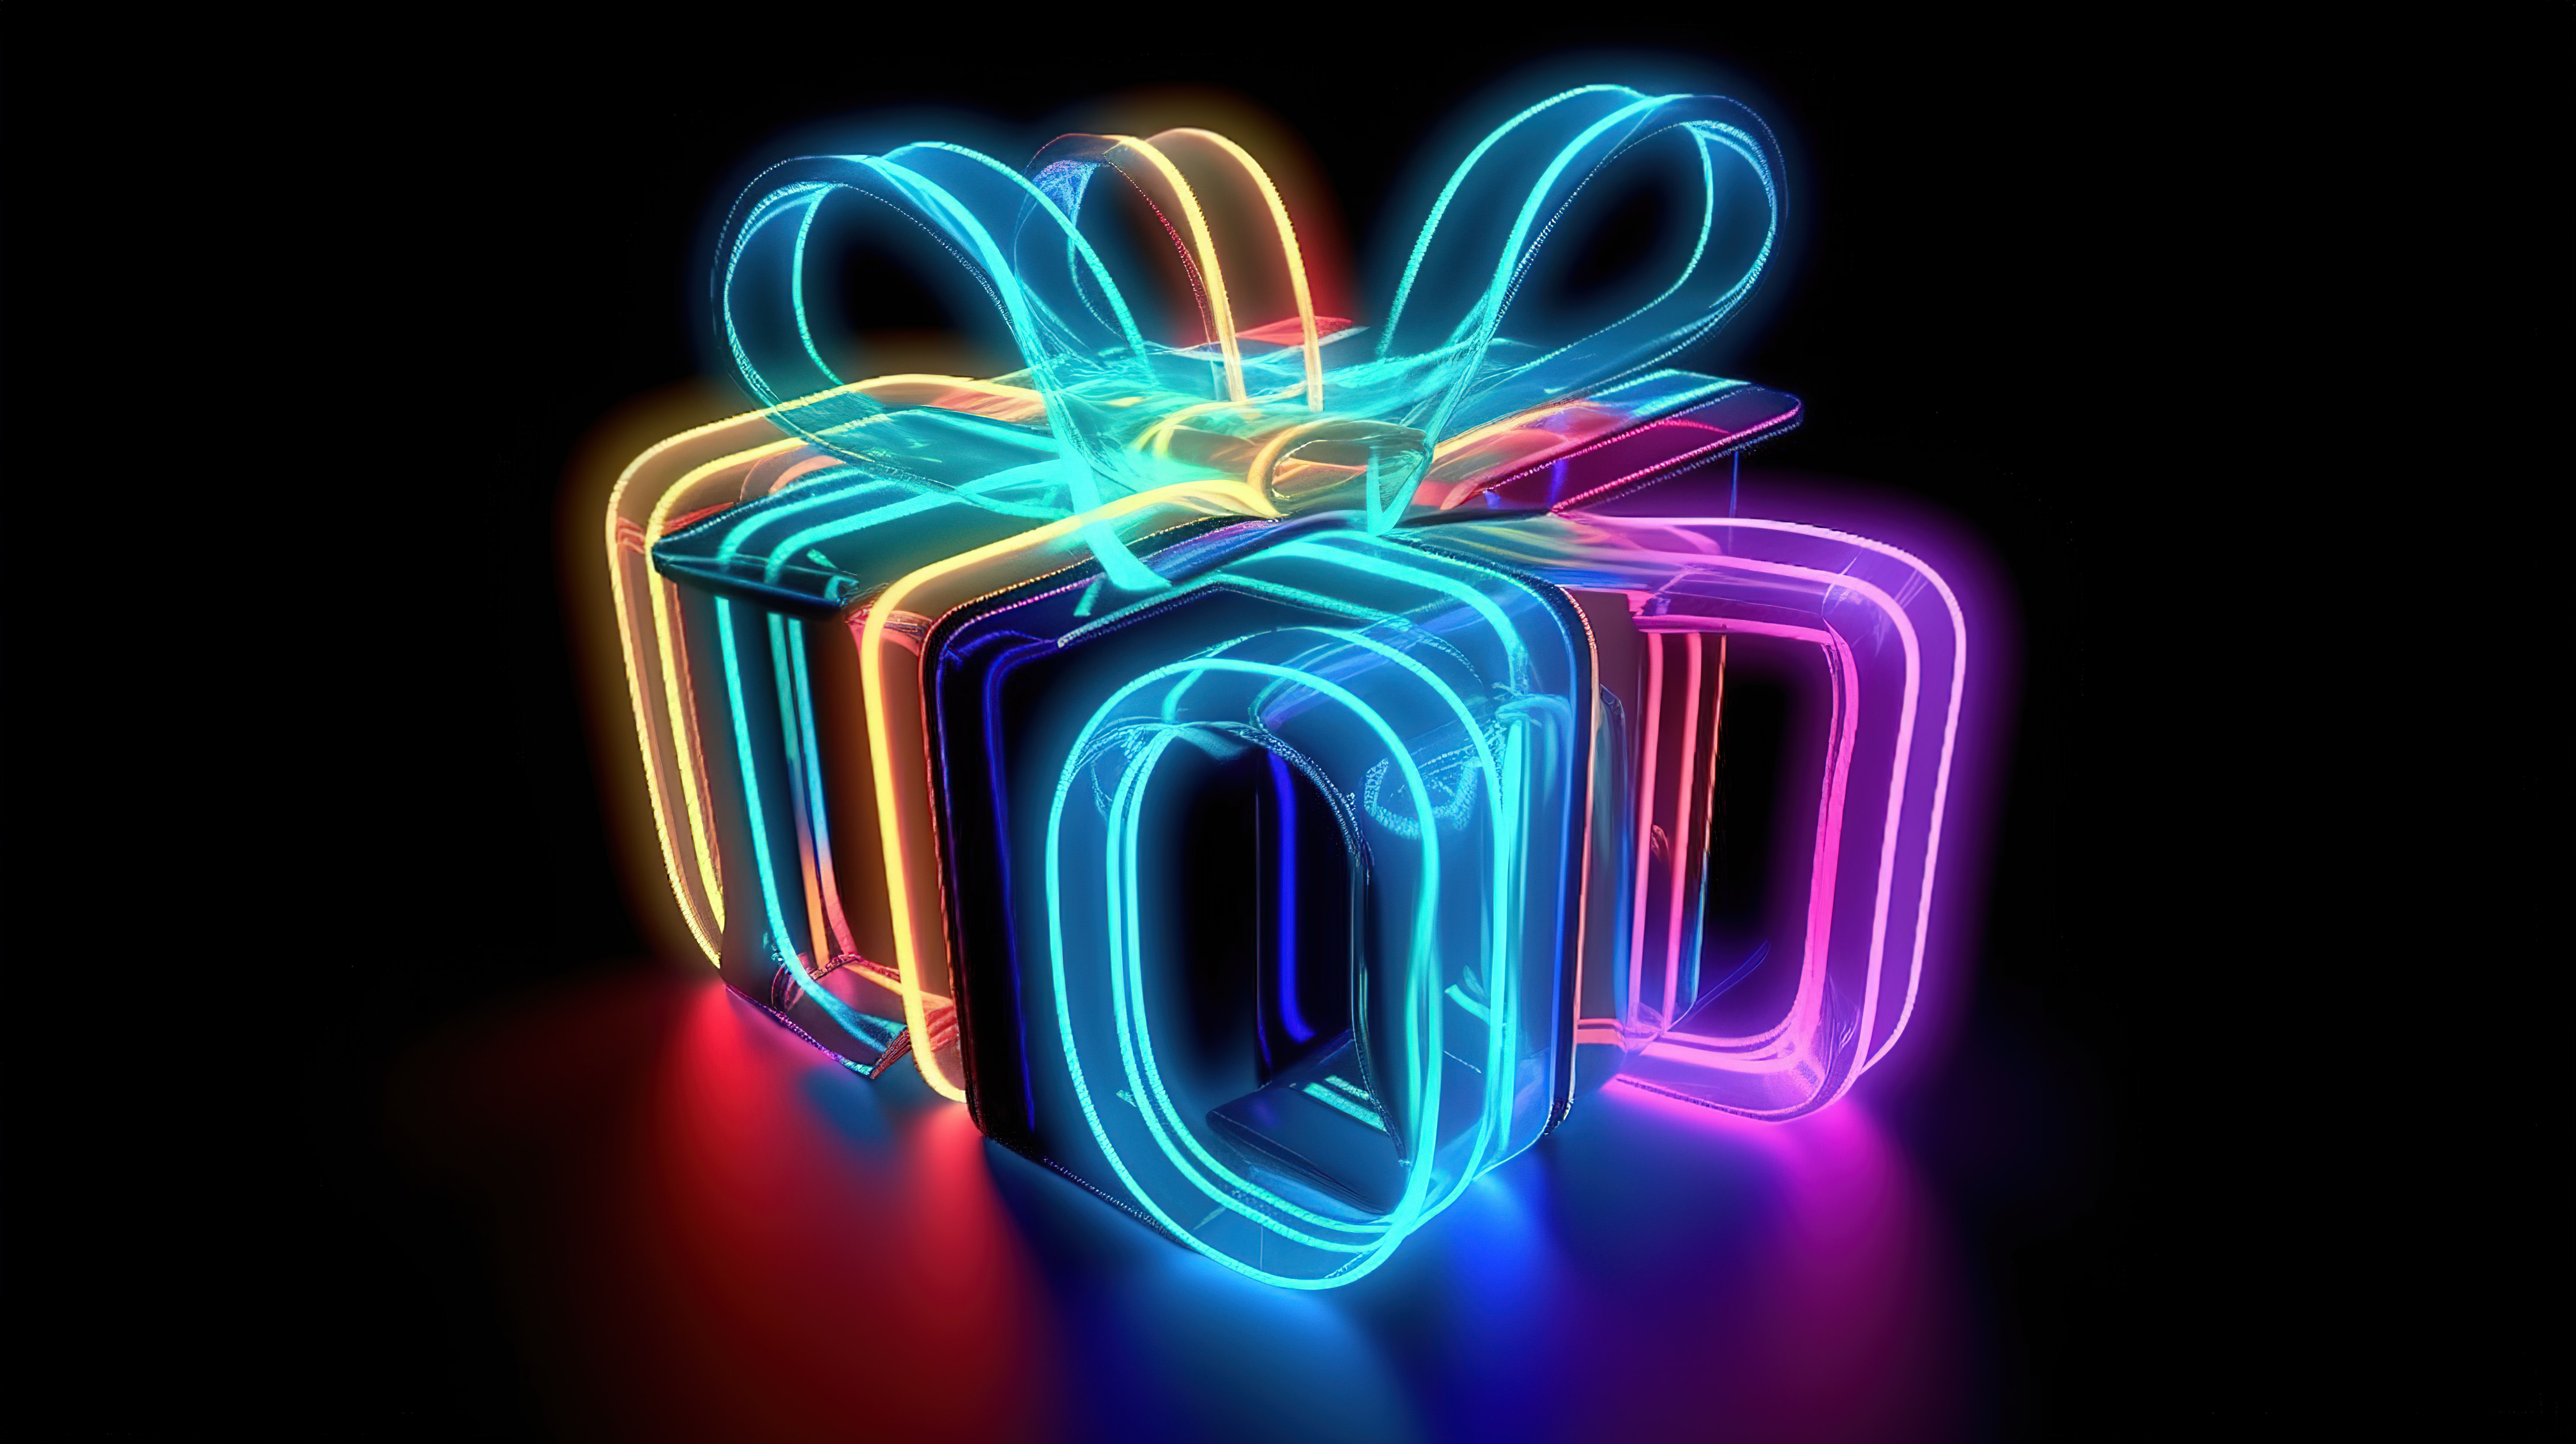 令人惊叹的霓虹灯礼物词在抽象 3d 中闪闪发光图片